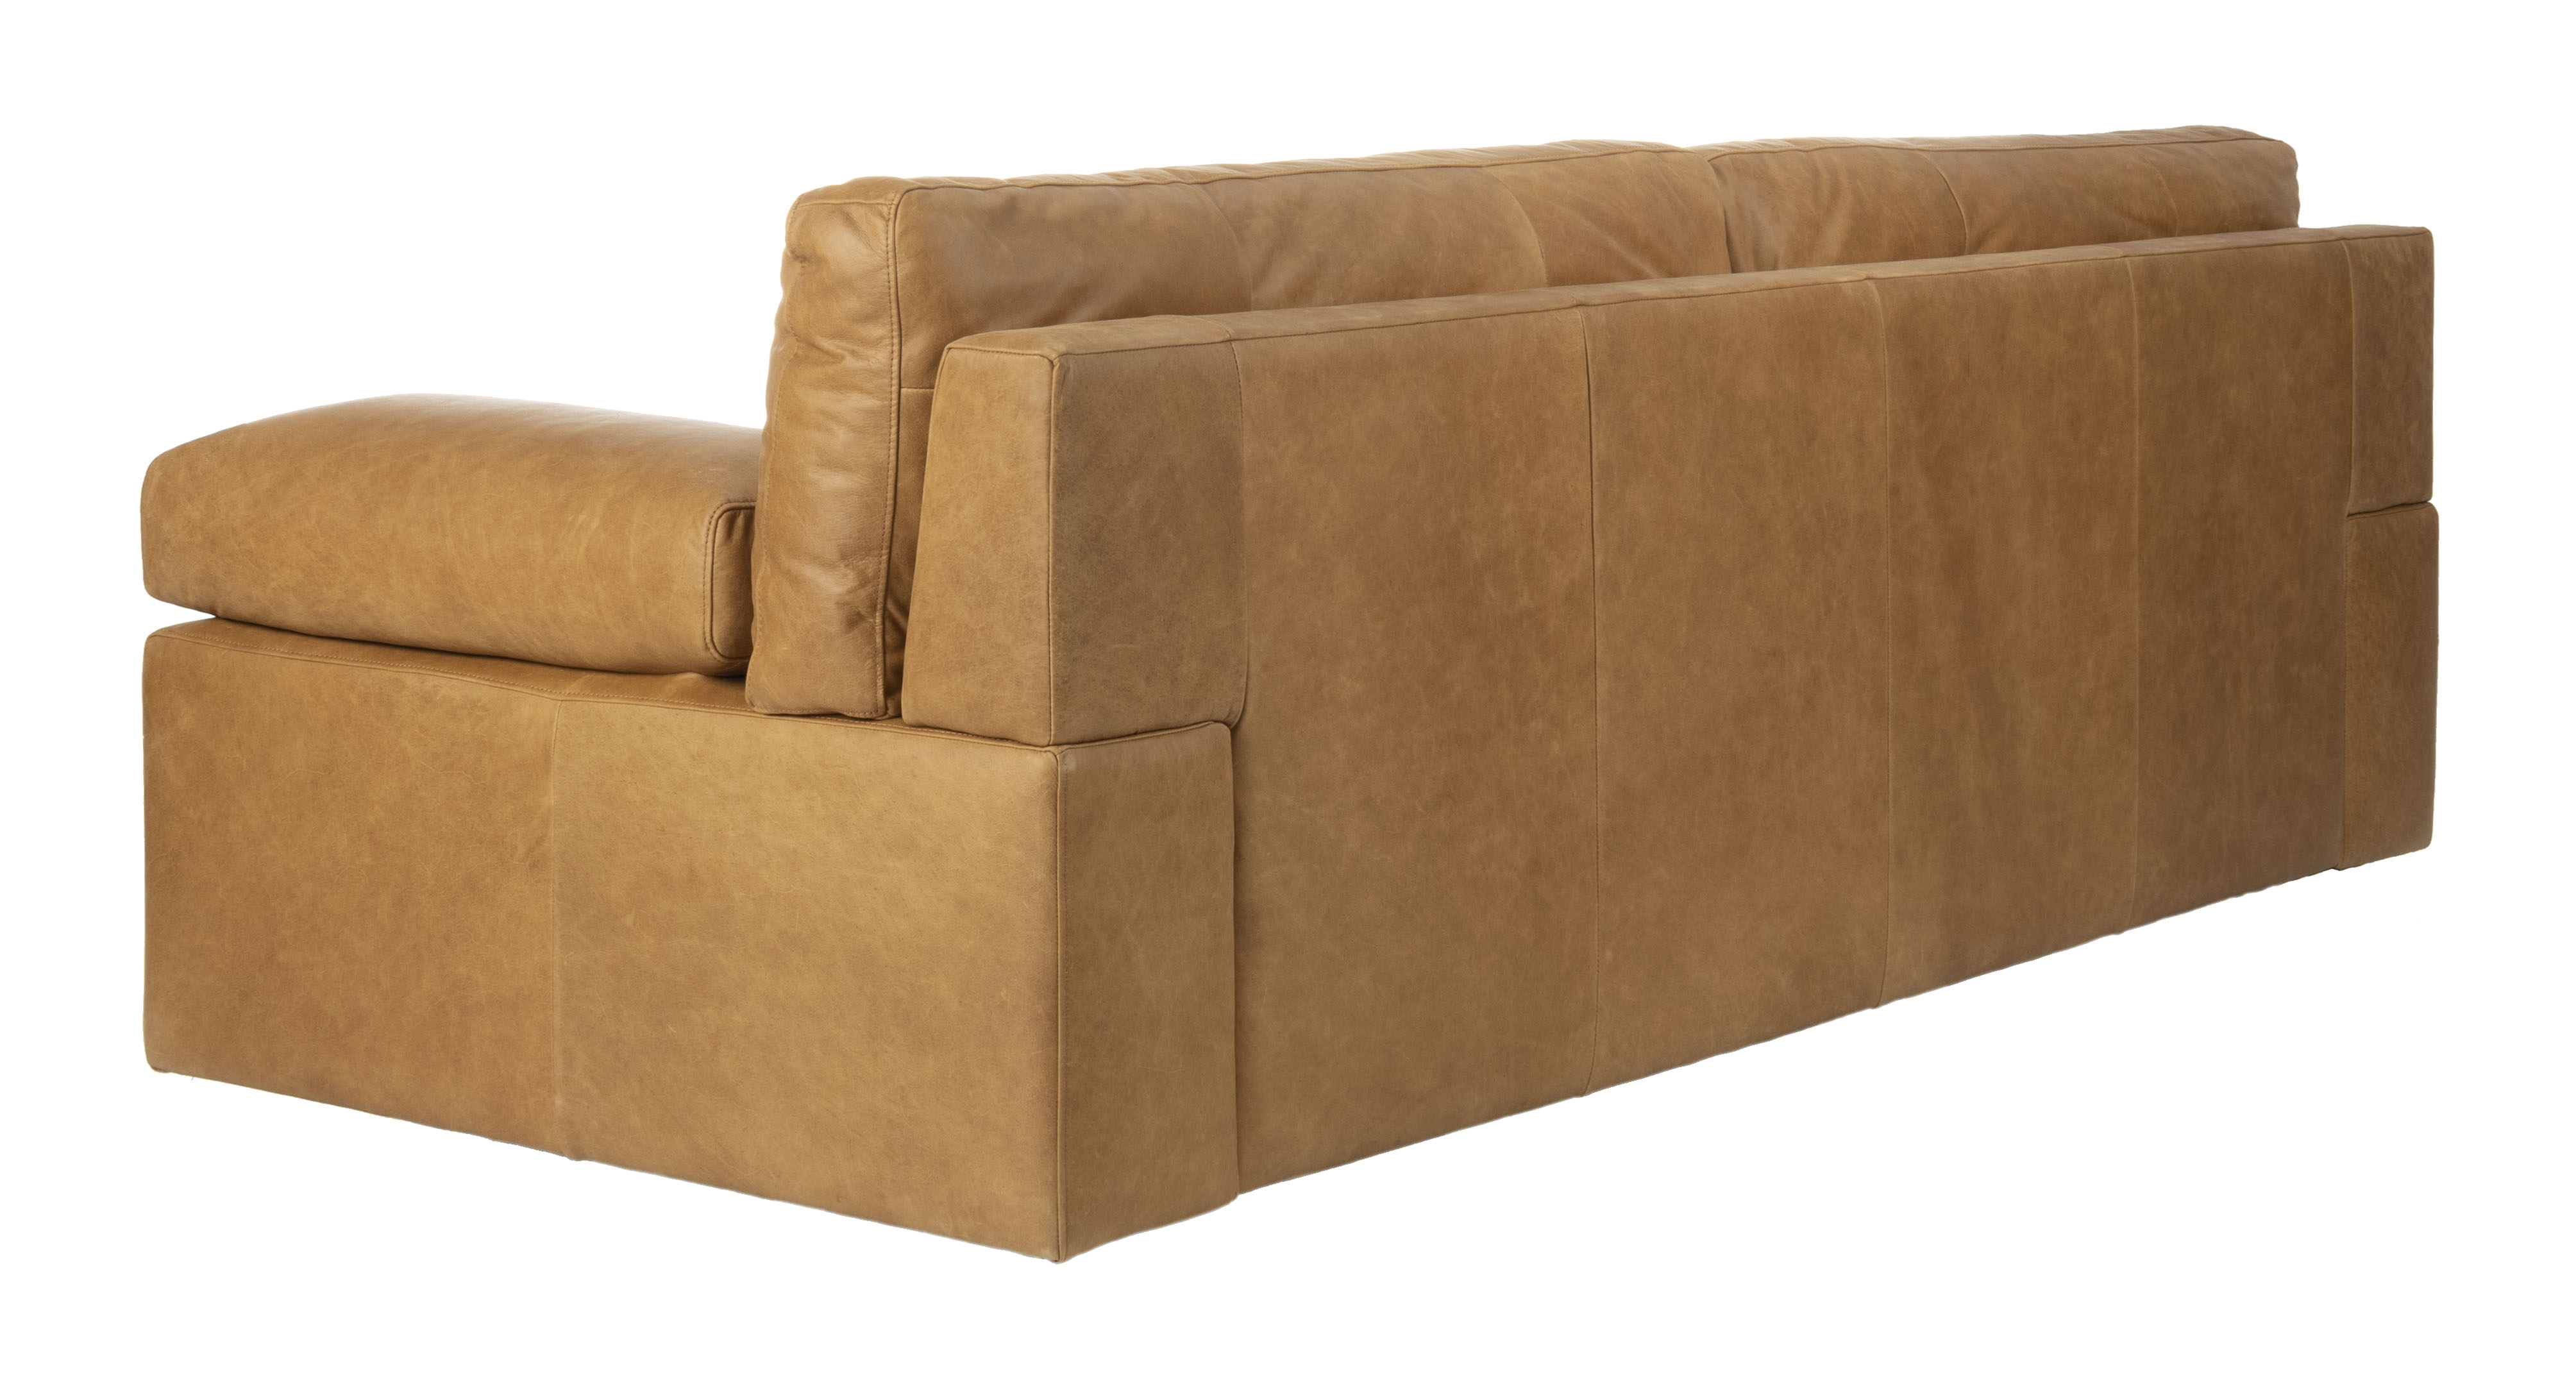 Osma Italian Leather Sofa, Caramel - Image 3